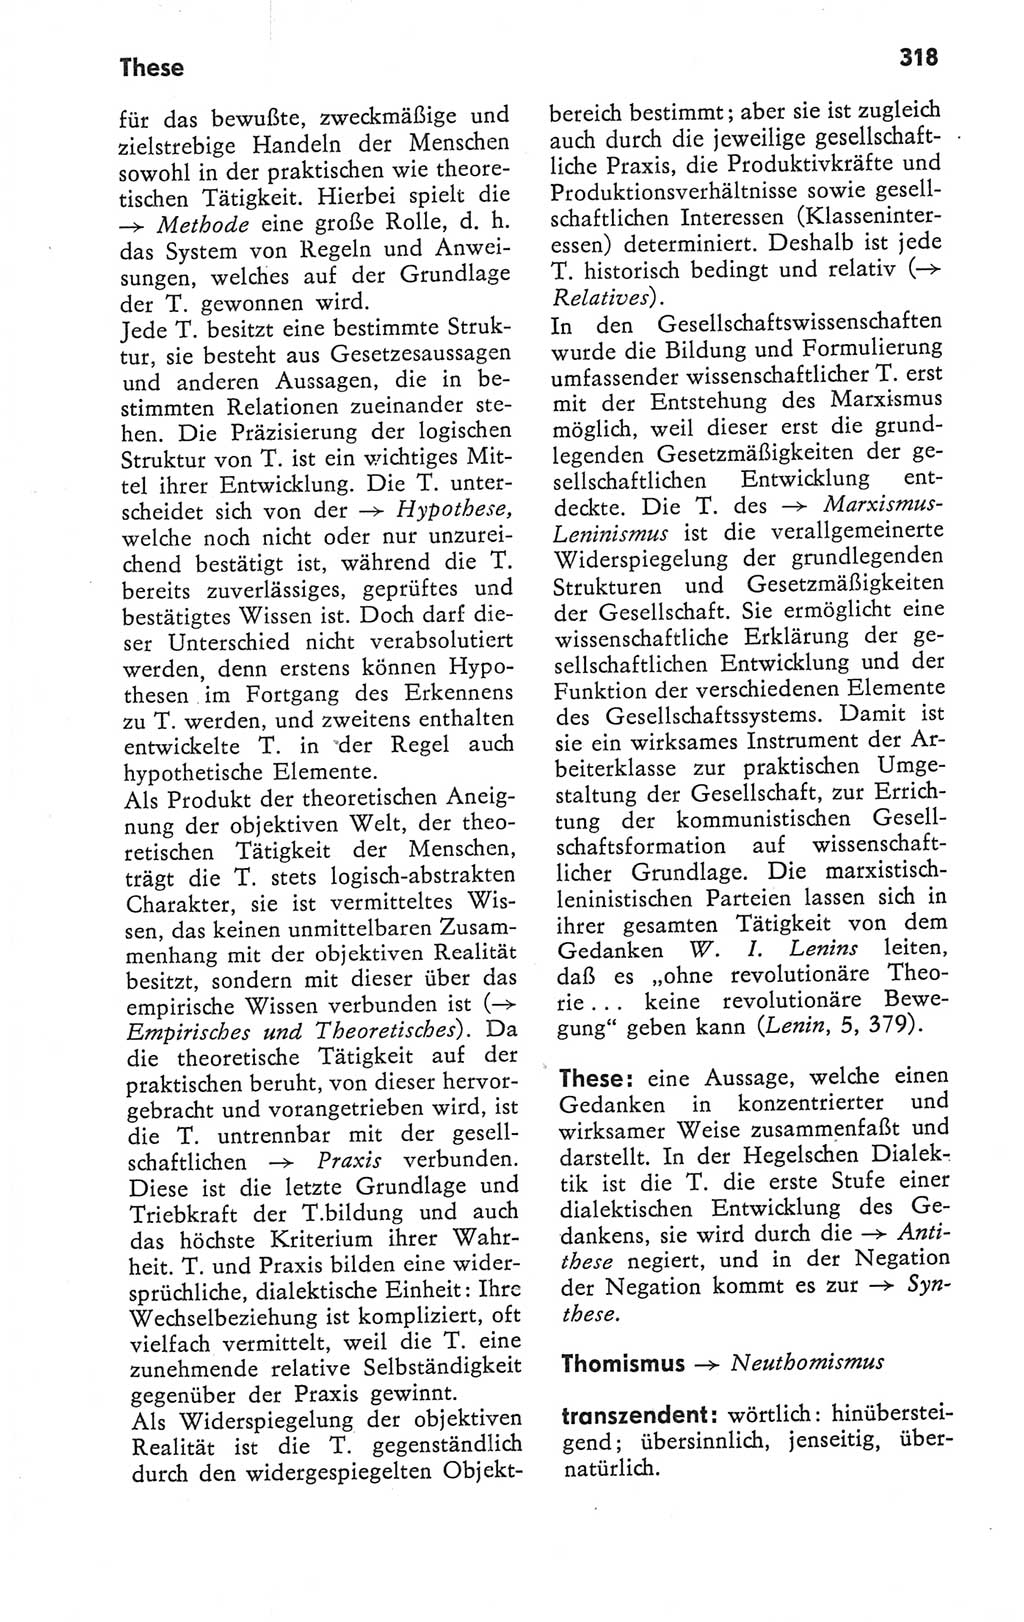 Kleines Wörterbuch der marxistisch-leninistischen Philosophie [Deutsche Demokratische Republik (DDR)] 1979, Seite 318 (Kl. Wb. ML Phil. DDR 1979, S. 318)